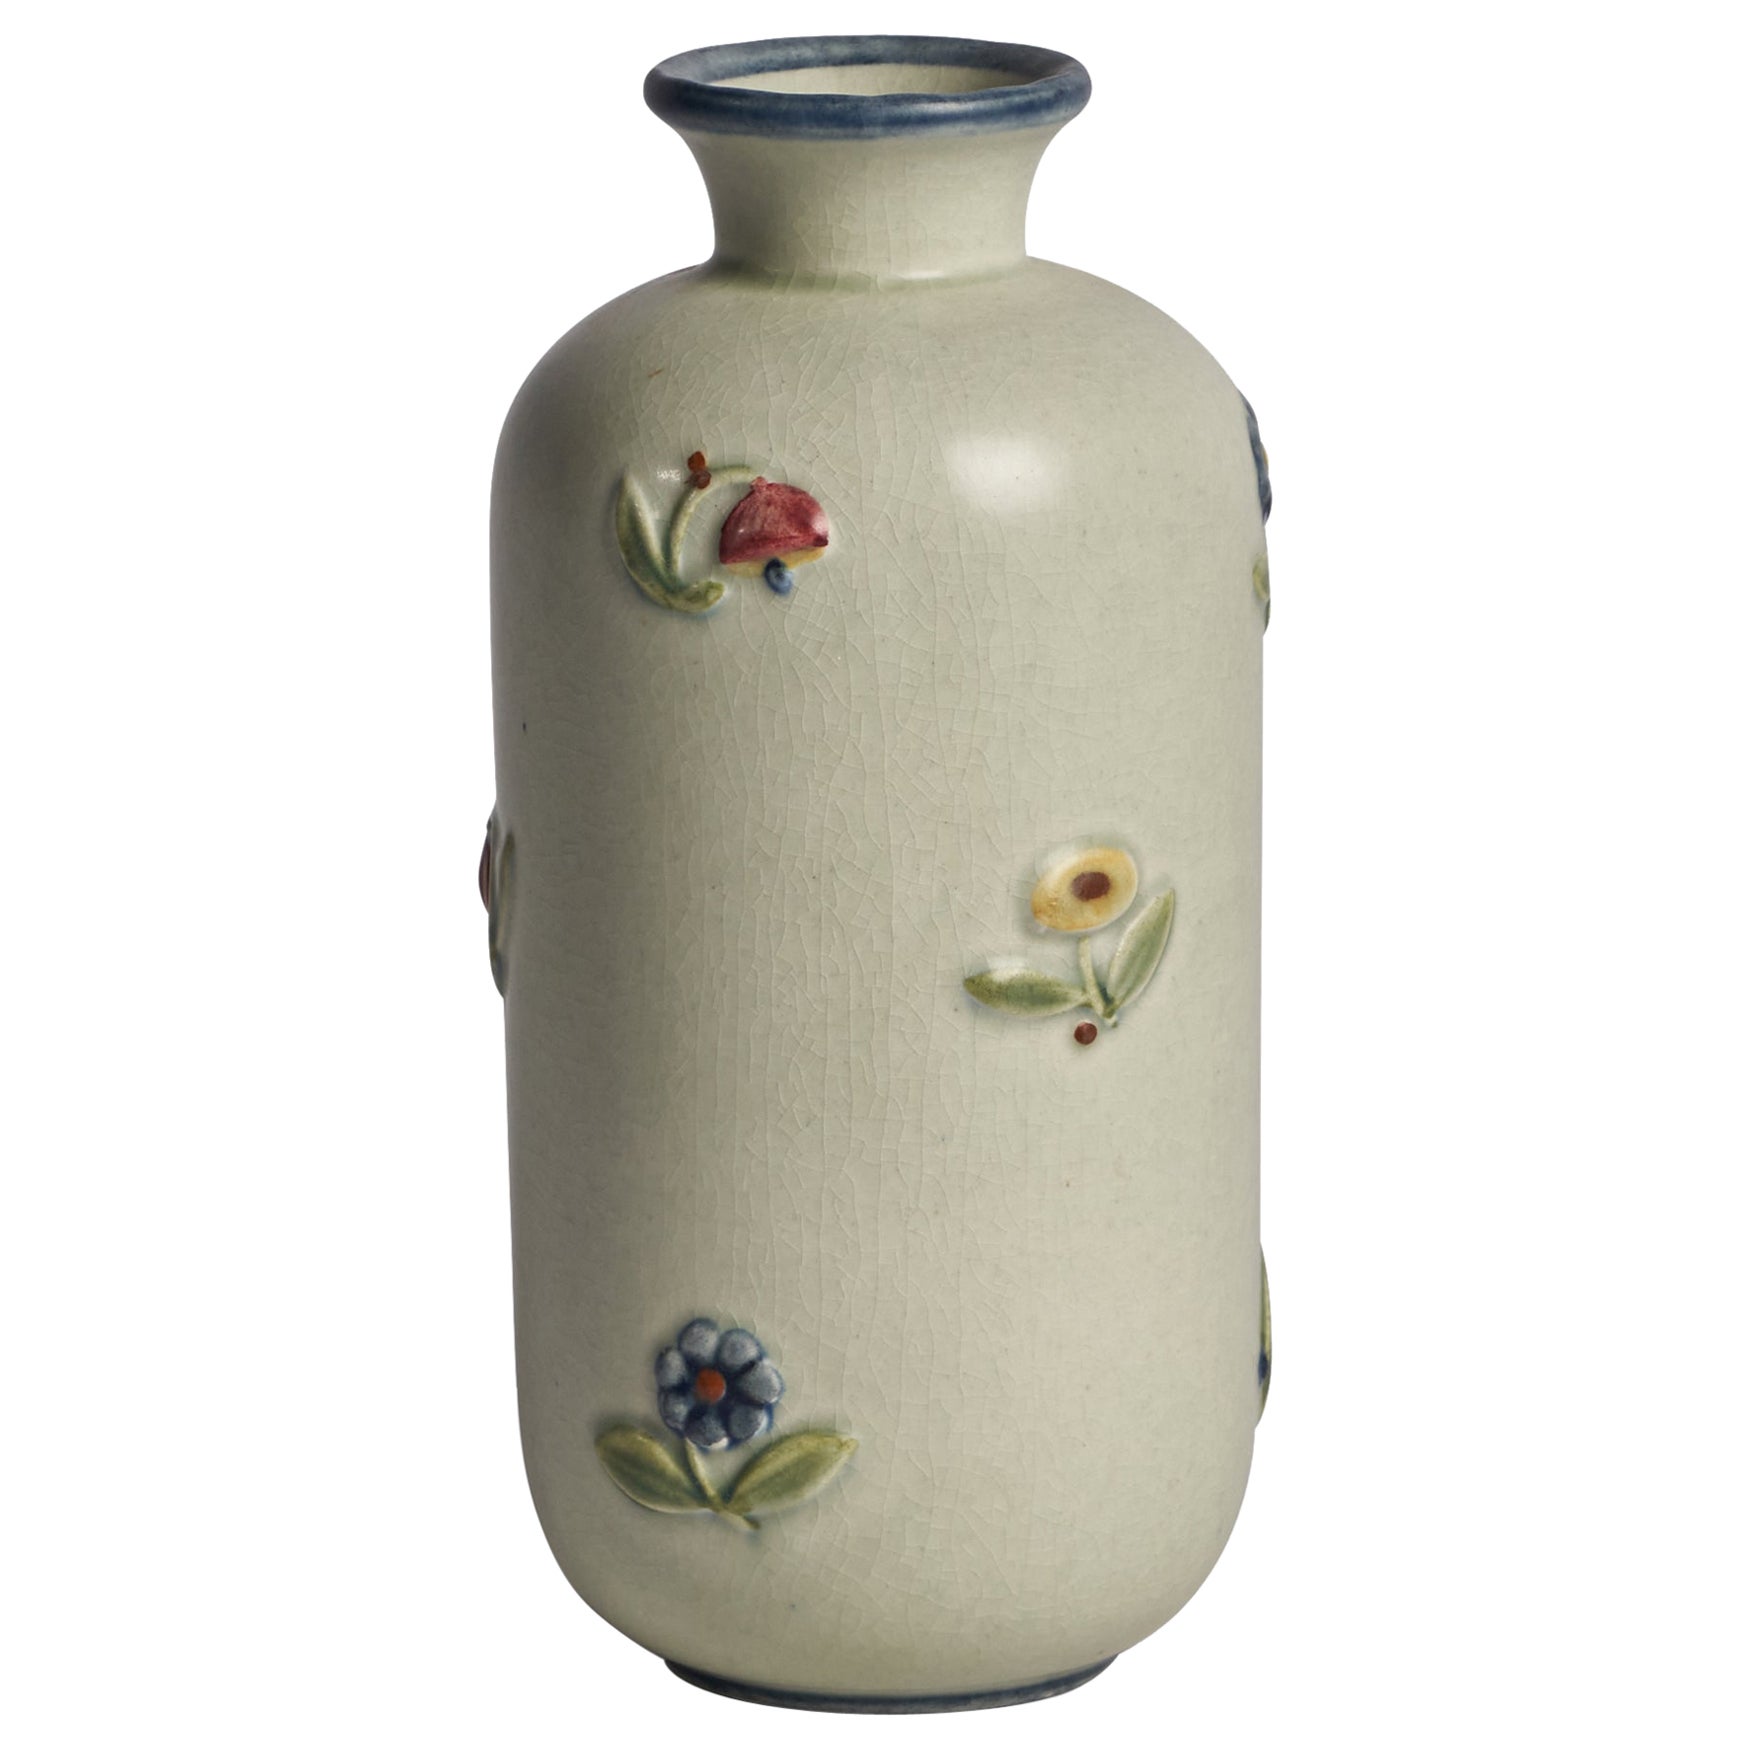 Gertrud Lönegren, "Primavera" Vase, Stoneware, Sweden, 1940s